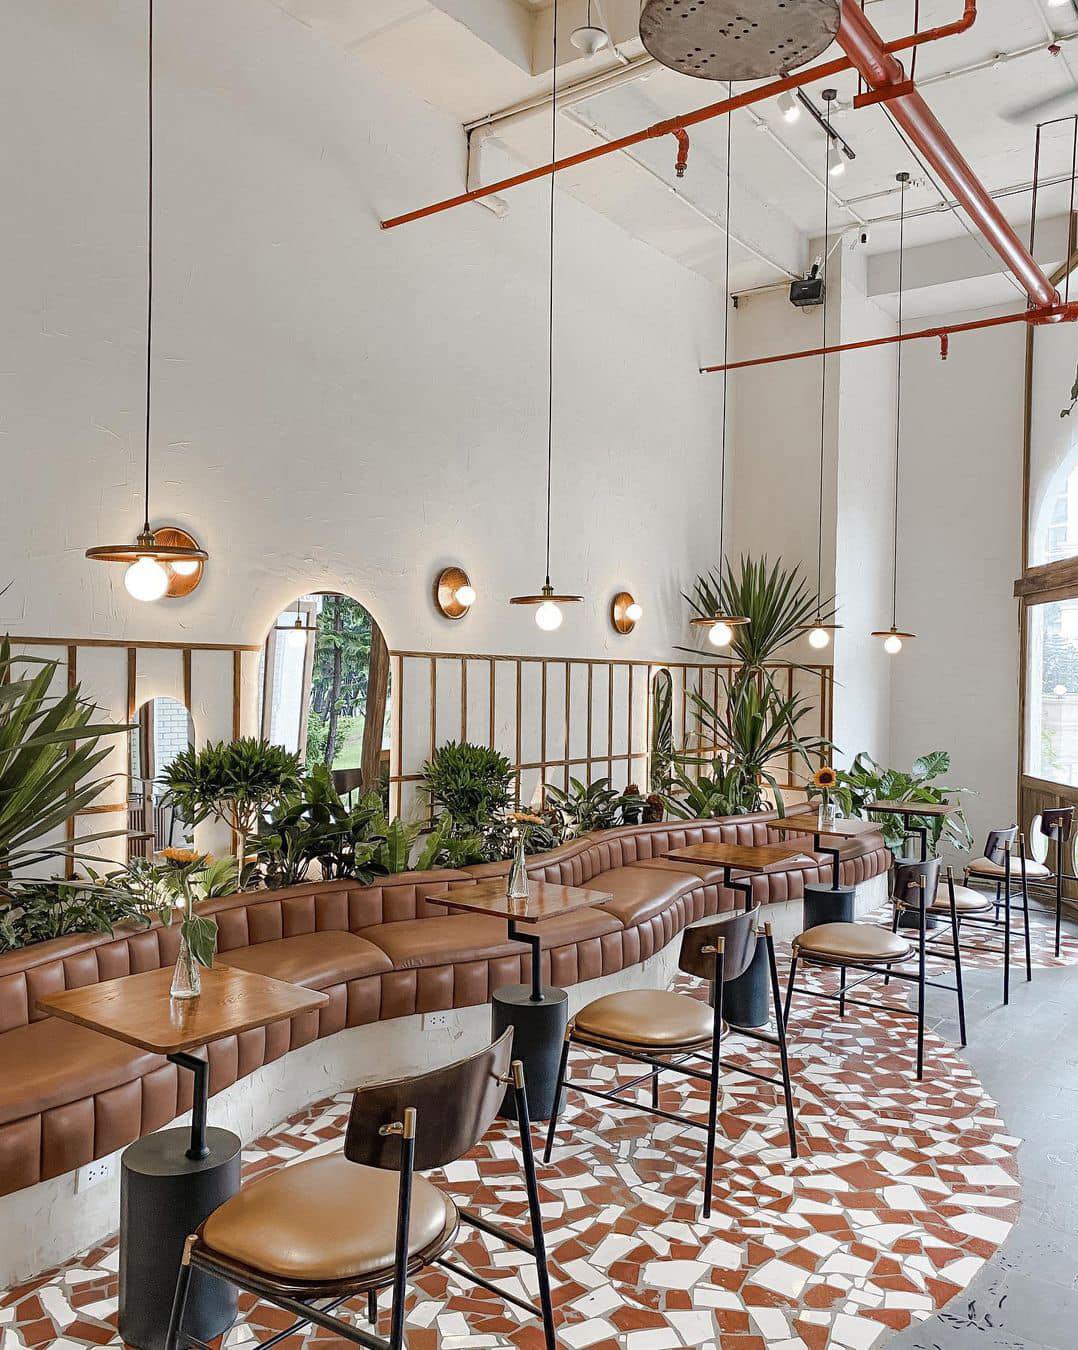 2. Mermon Coffee Royal City - Thiết kế hiện đại đậm chất "minimalism"